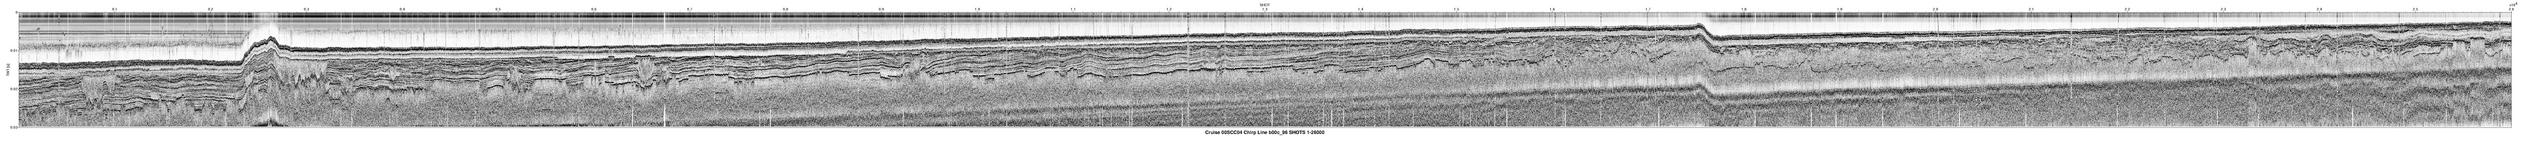 00SCC04 b00c_96 seismic profile image